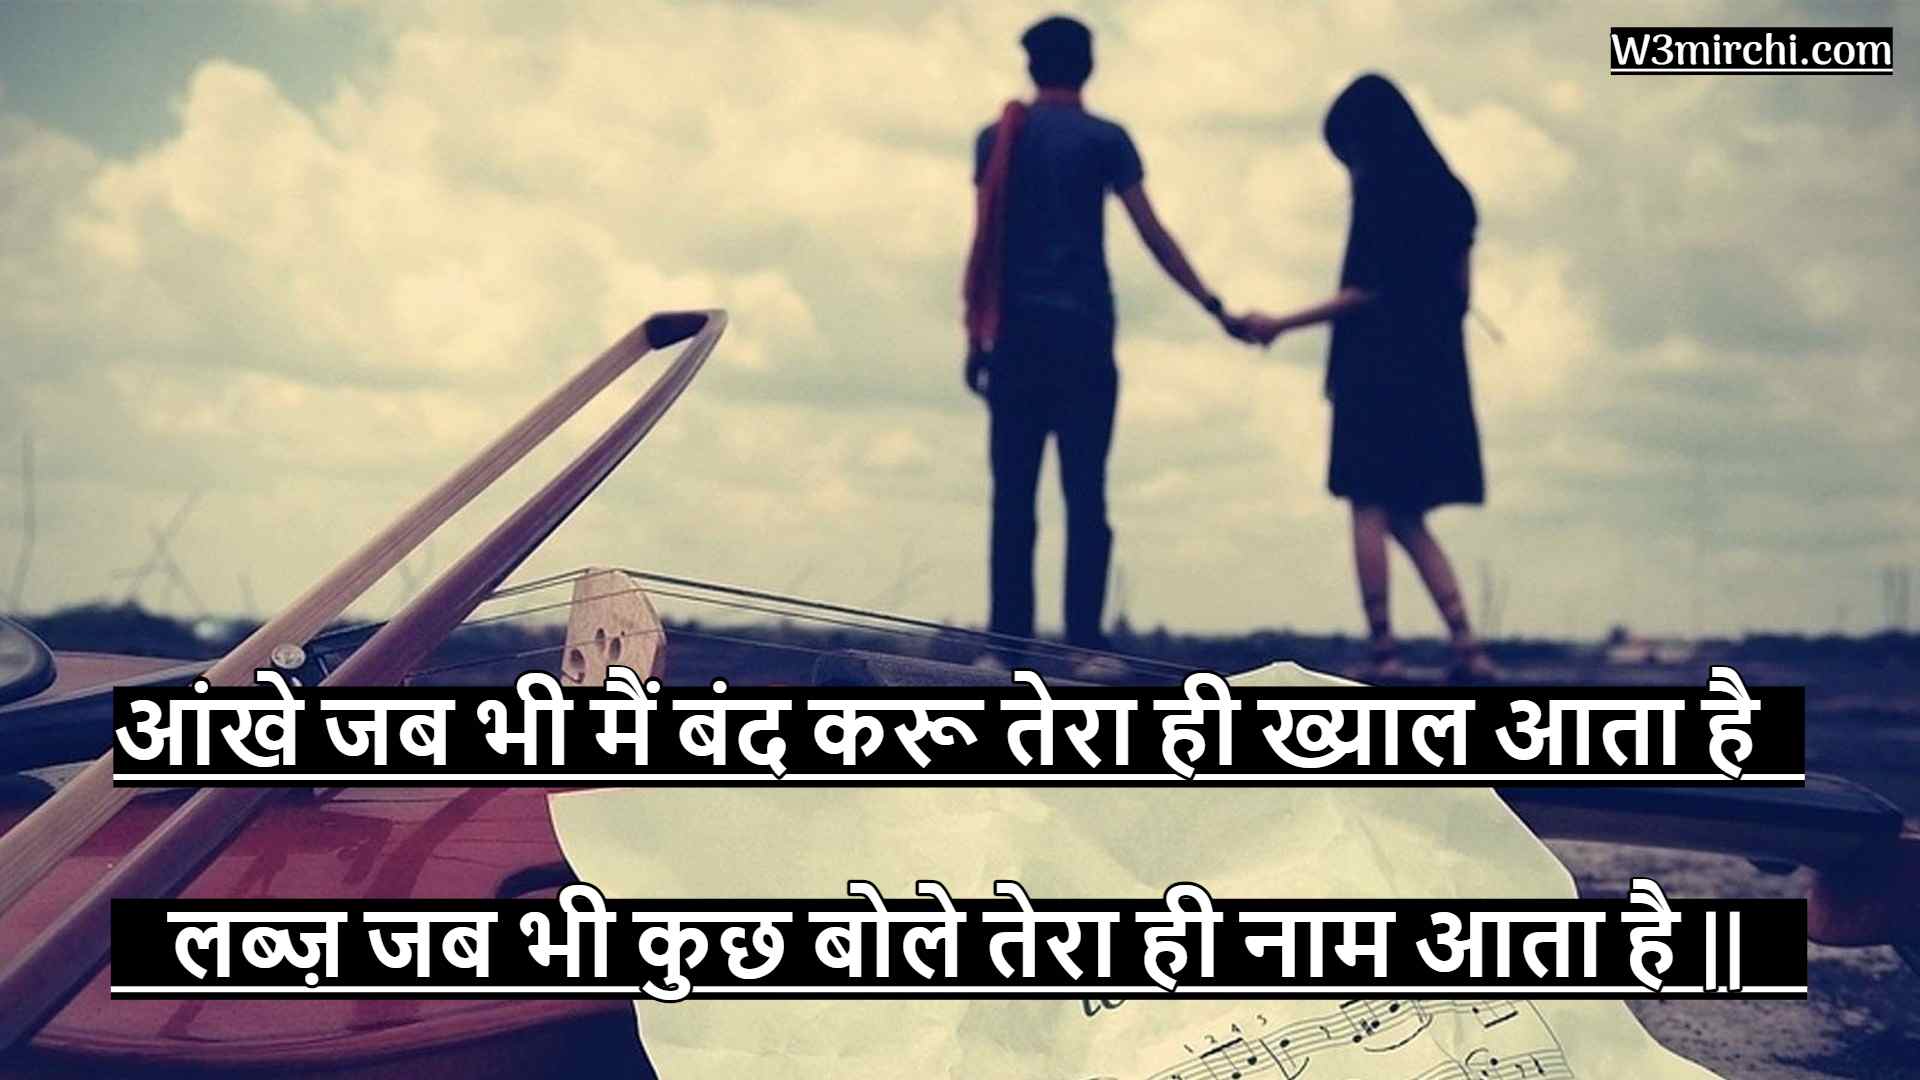 Love shayari for girlfriend in Hindi